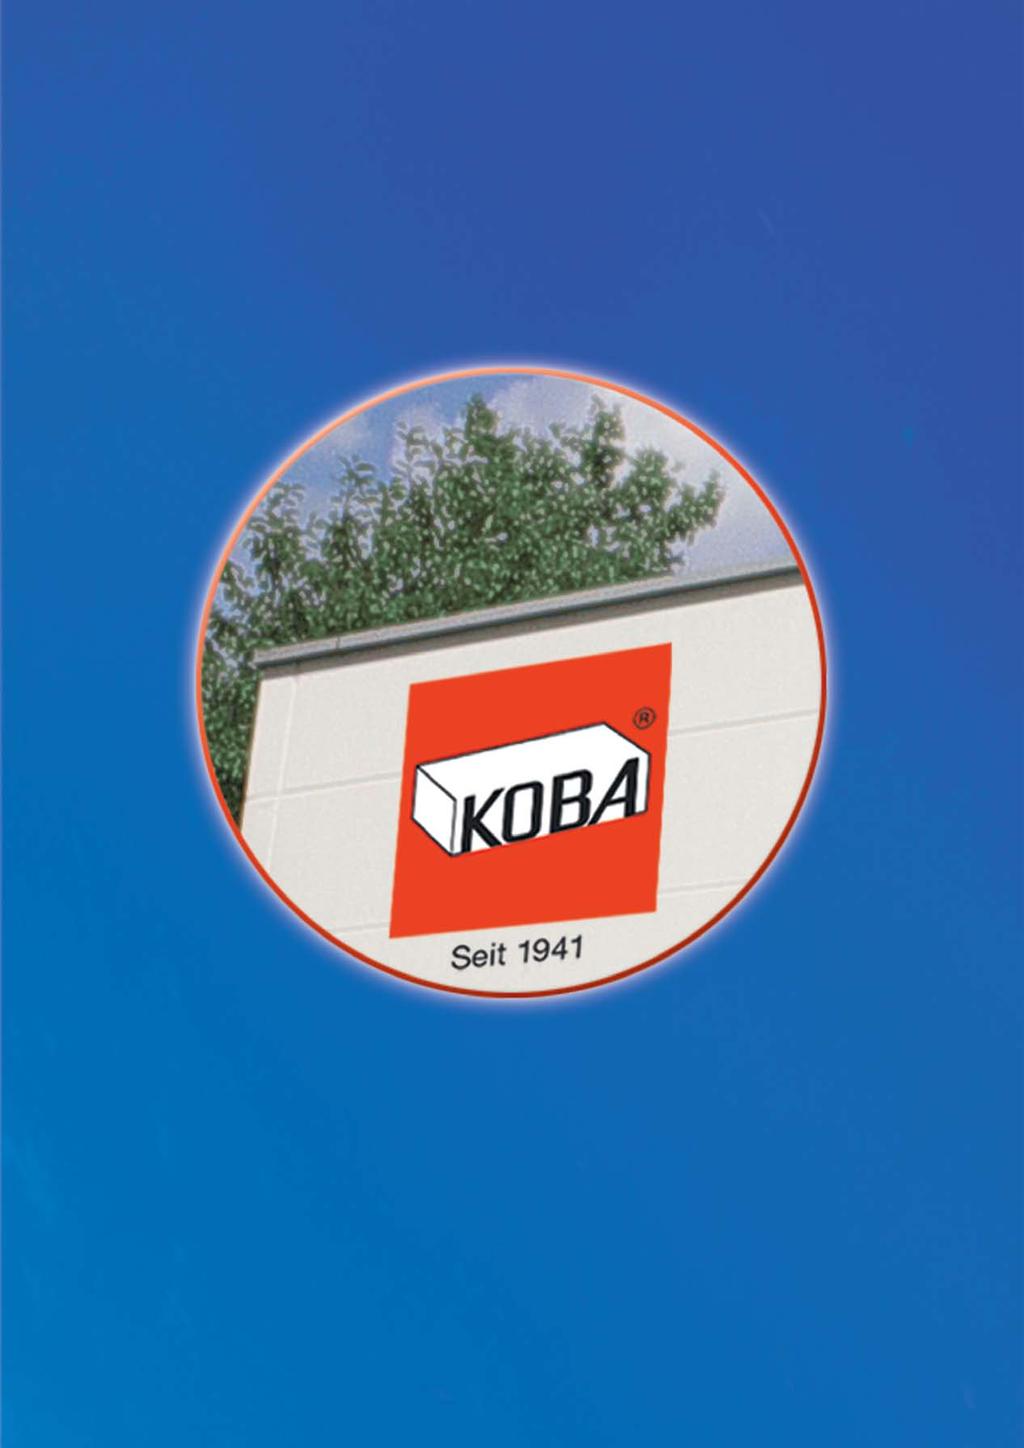 Kolb & Baumann GmbH & Co.